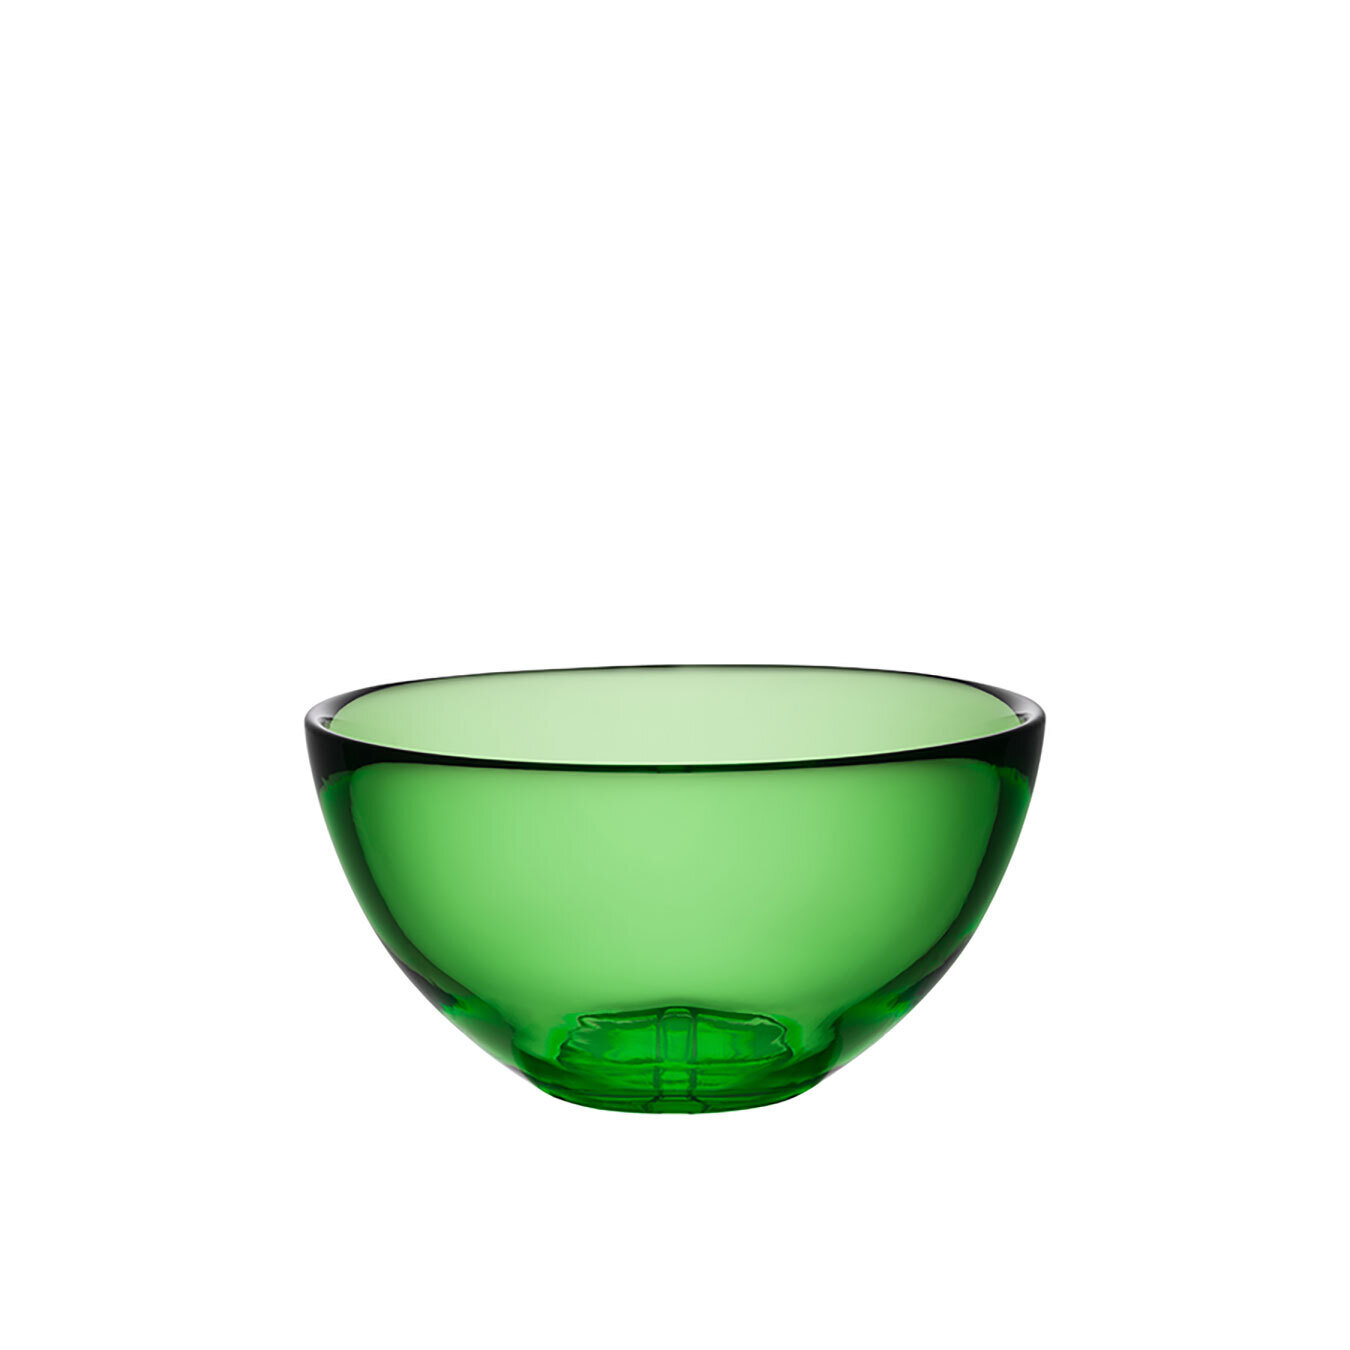 Kosta Boda Bruk Serving Bowl Medium Apple Green 7051805